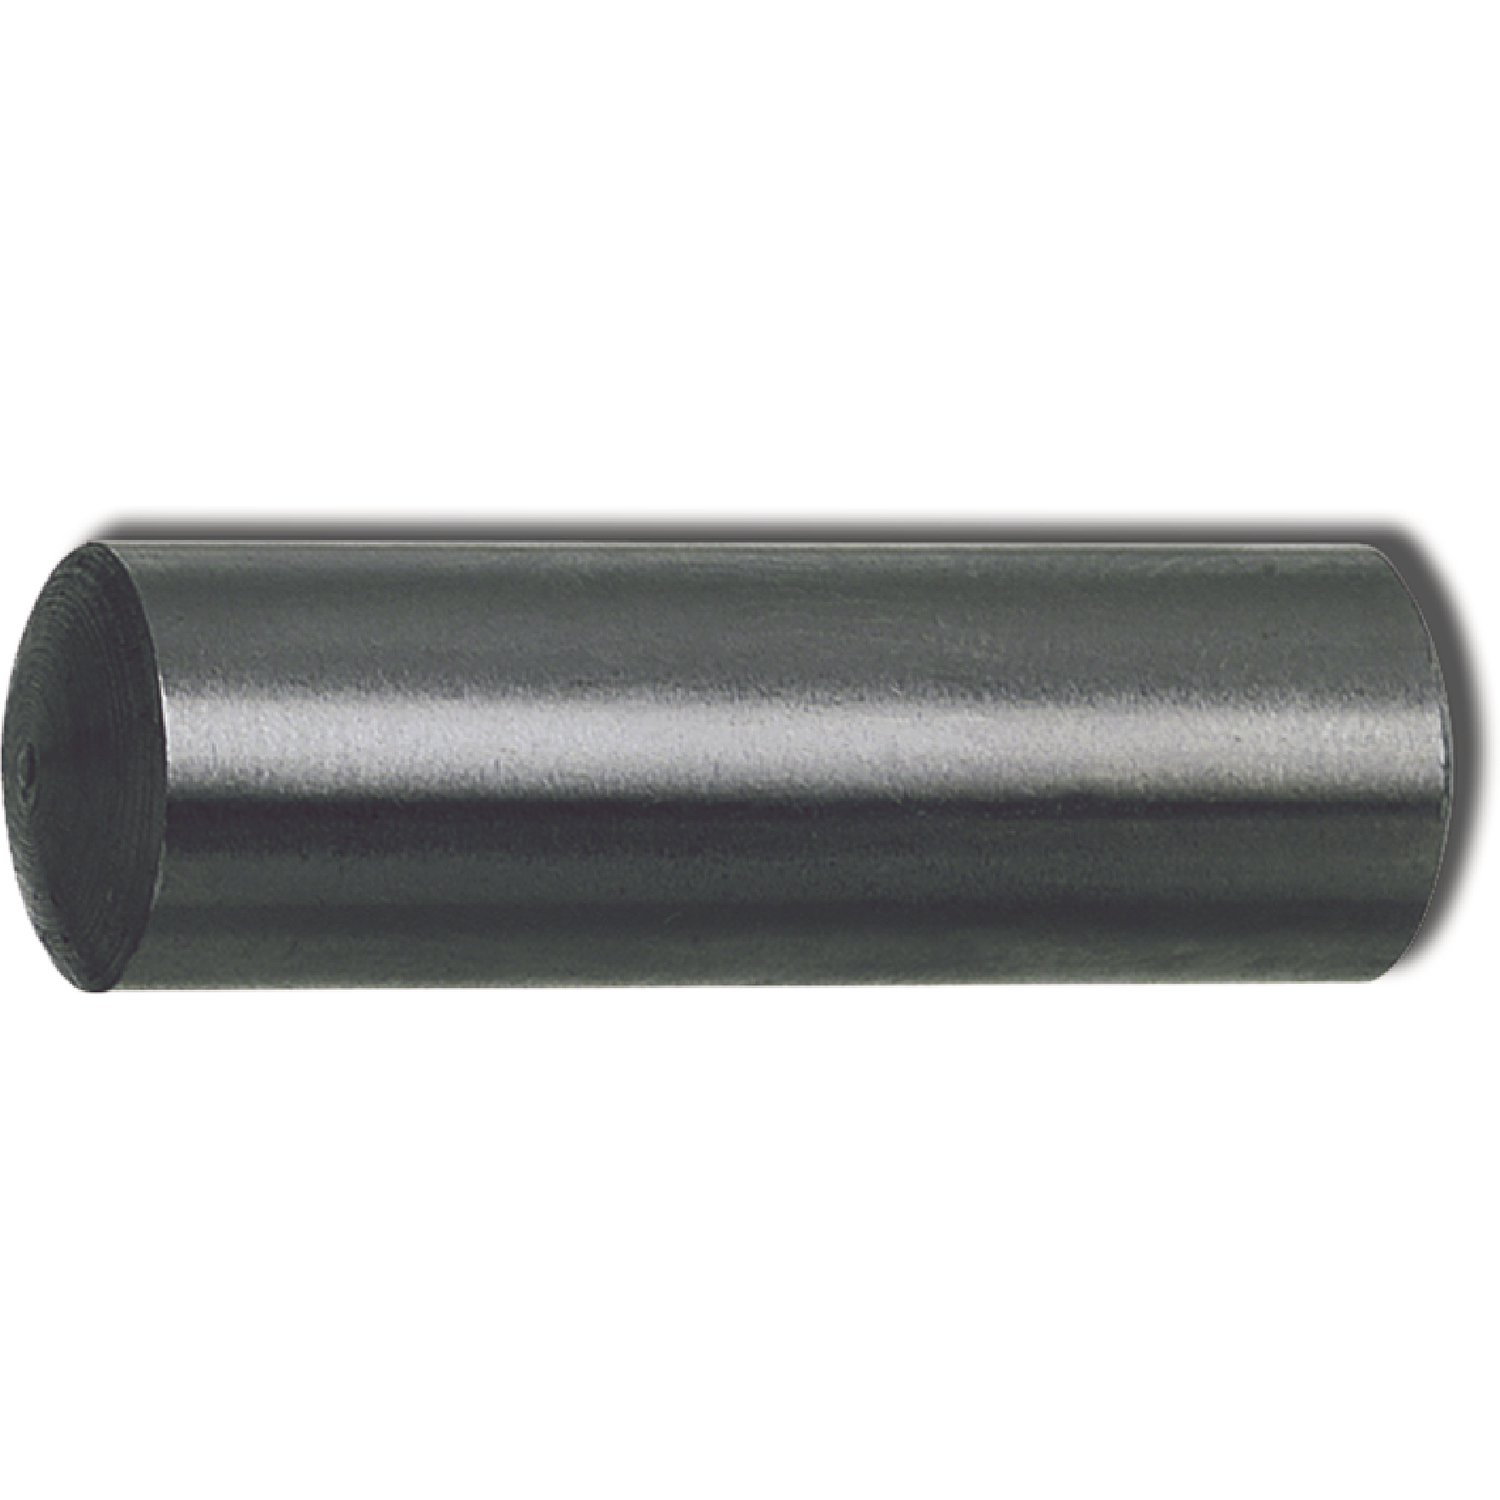 25 Stück Zylinderstifte DIN 7 h8 INOX EDELSTAHL 5X20 Toleranz/Passung h8